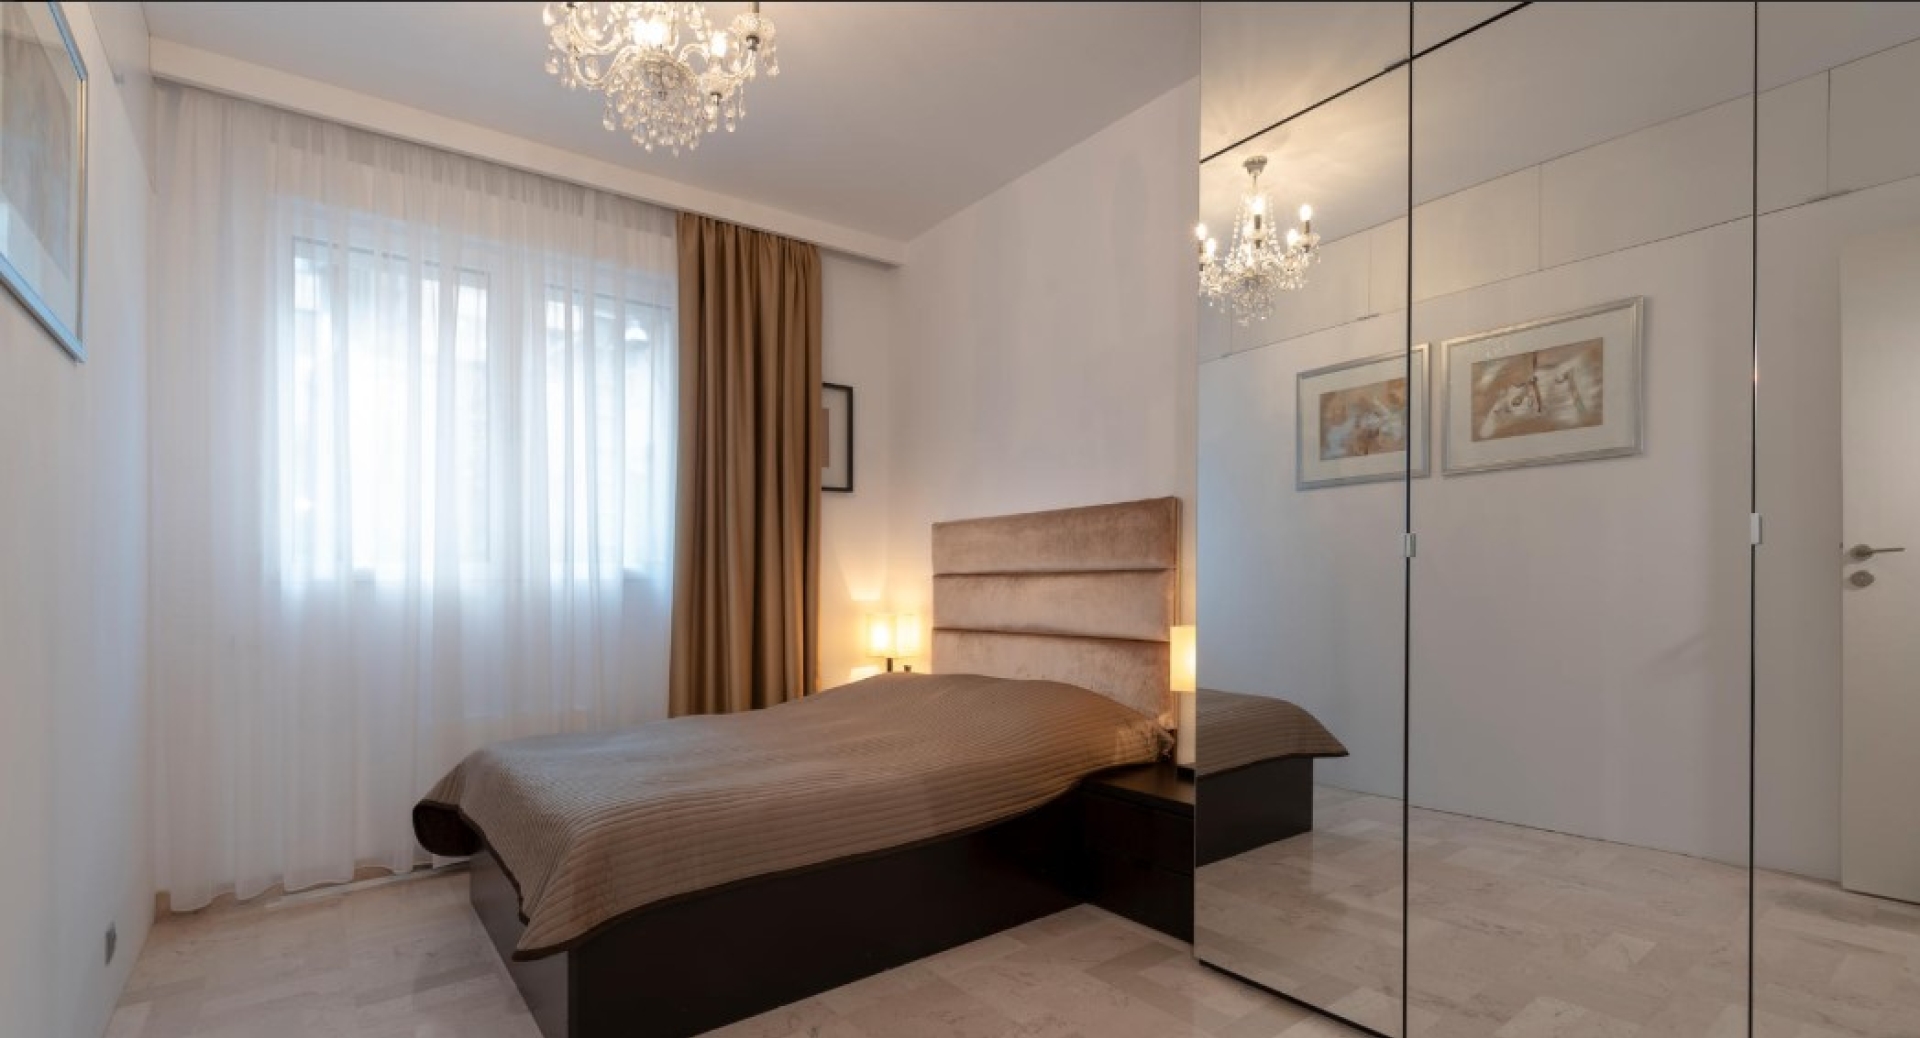 Dotta Appartement de 4 pieces a vendre - GEMEAUX - Jardin Exotique - Monaco - imgimage12